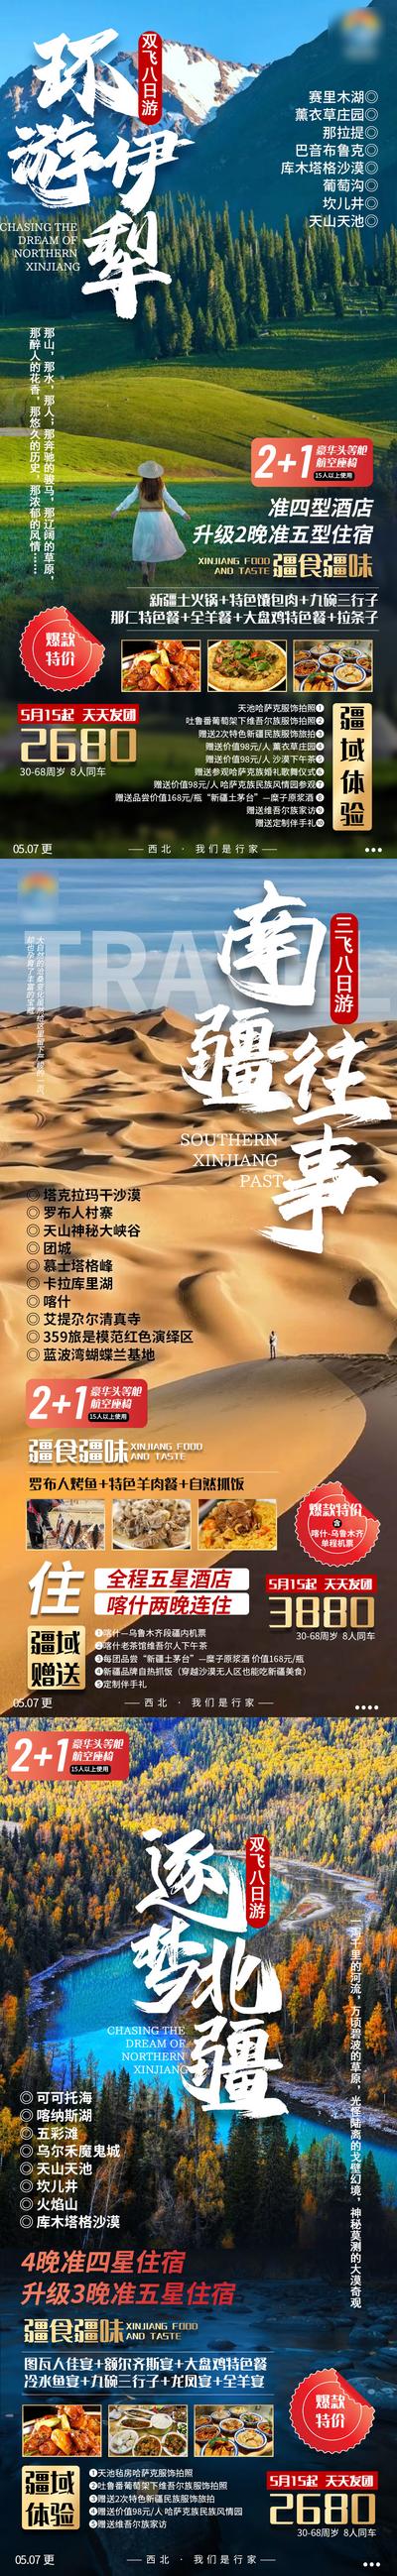 南门网 海报 旅游 新疆 北疆 伊犁 沙漠 风景 系列